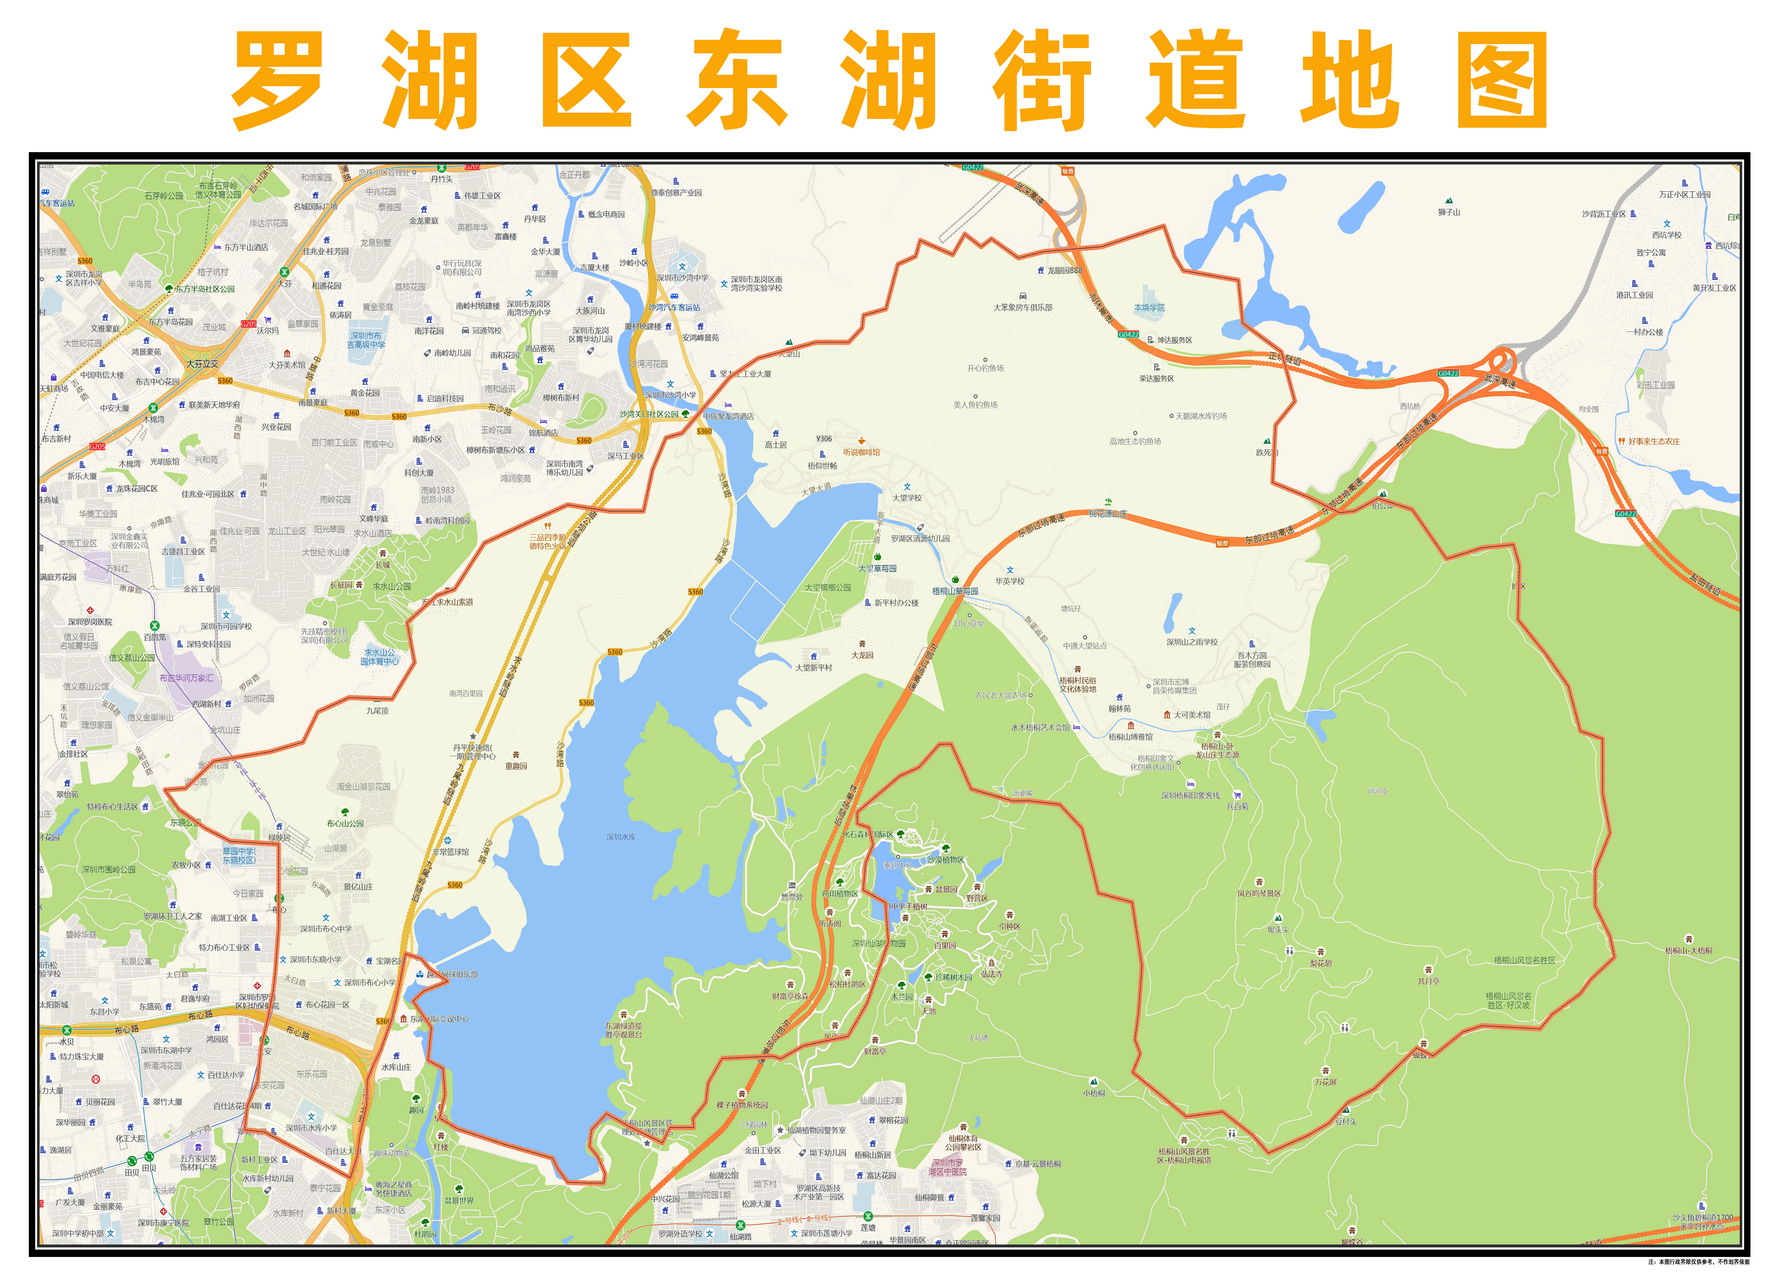 2021年深圳罗湖新春花市地图一览_深圳之窗